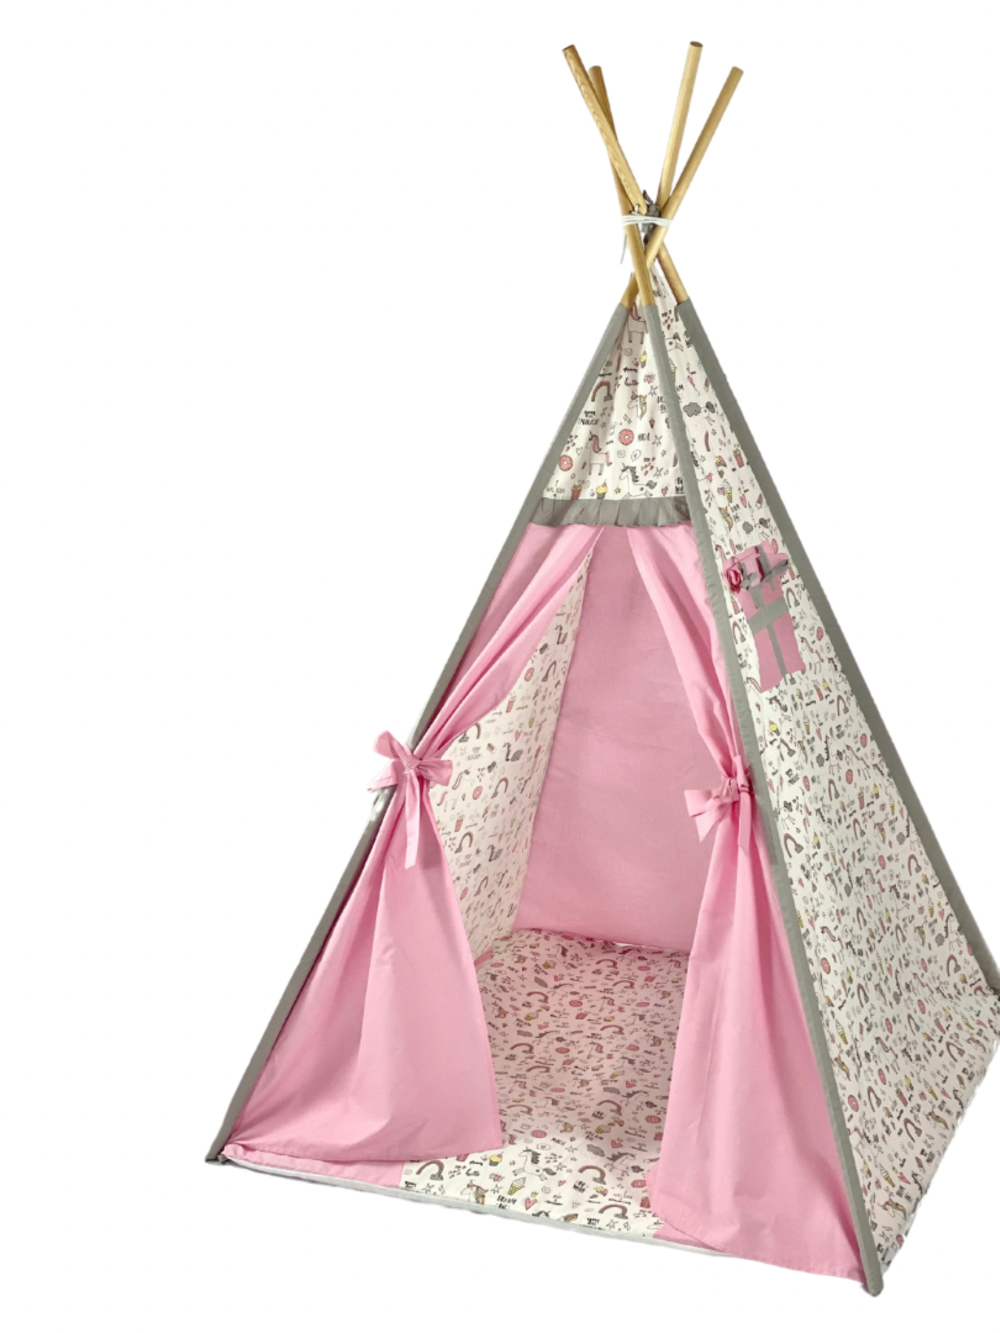 Παιδική Σκηνή - teepee tent Pink-Grey